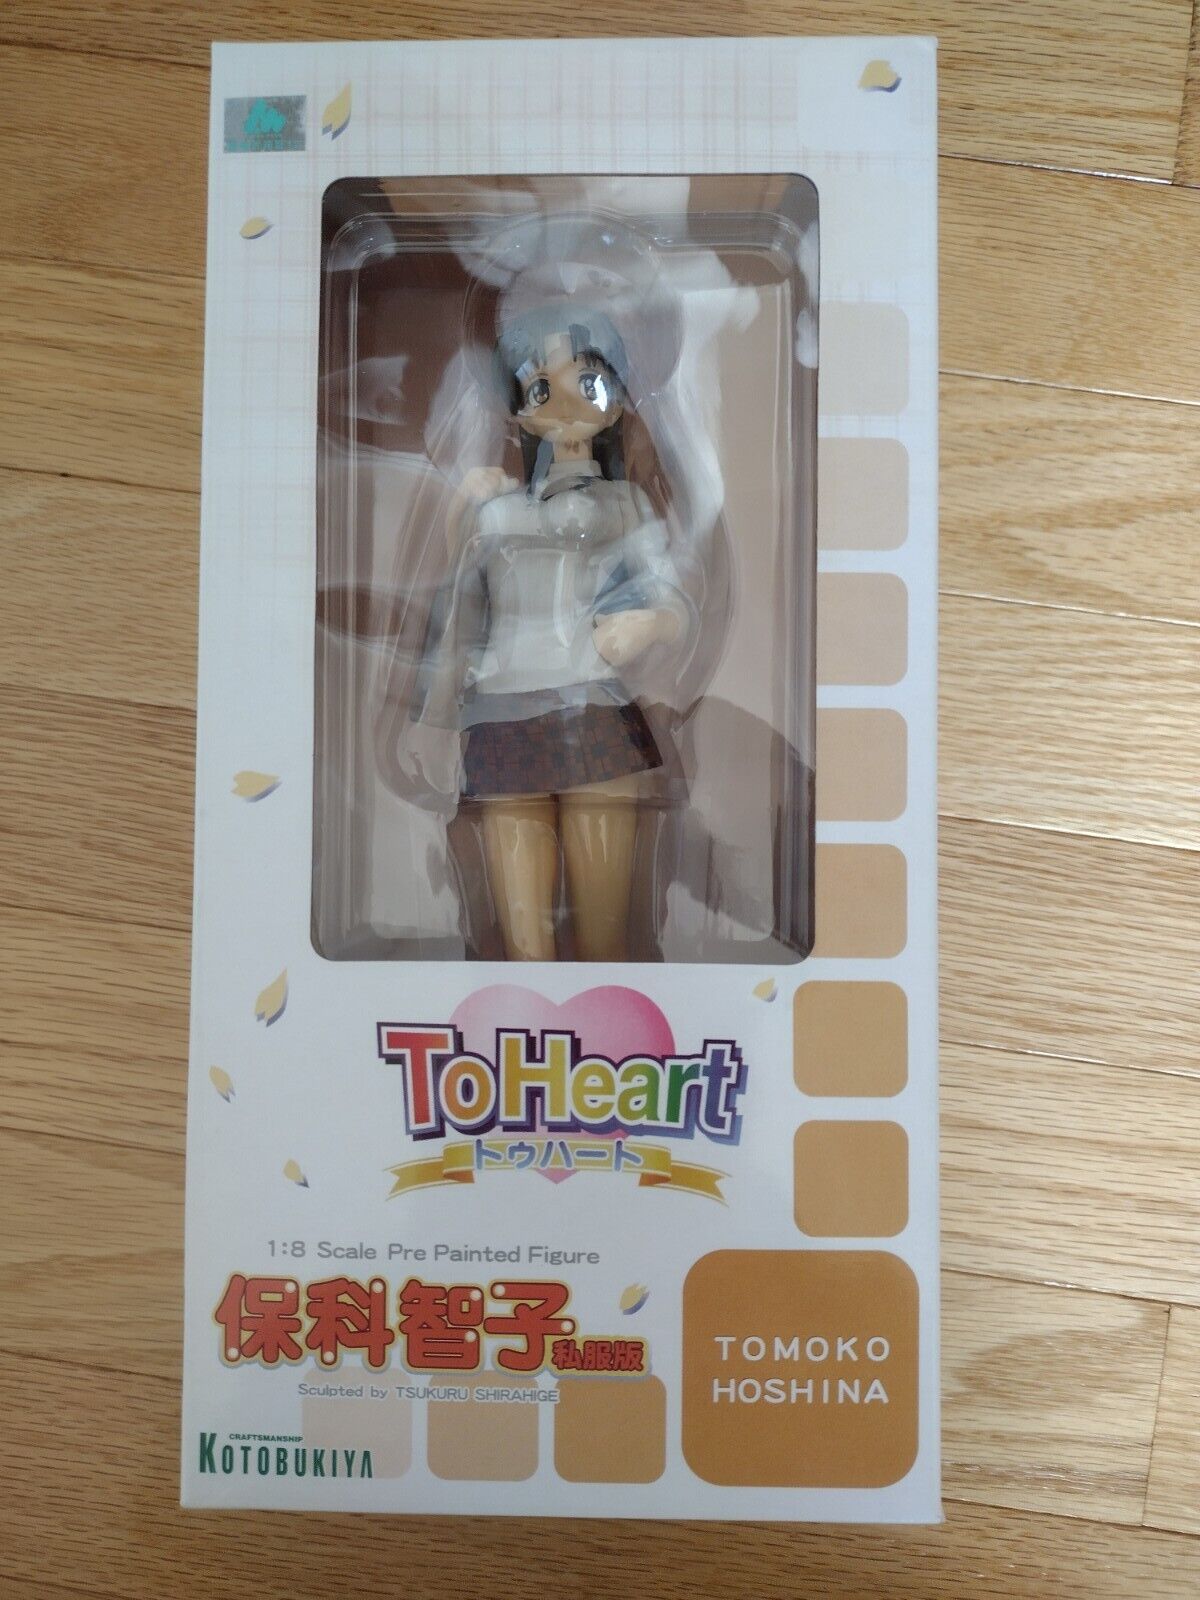 New Kotobukiya To Heart Tomoko Hoshina 1:8 Scale Pre-Painted Figure